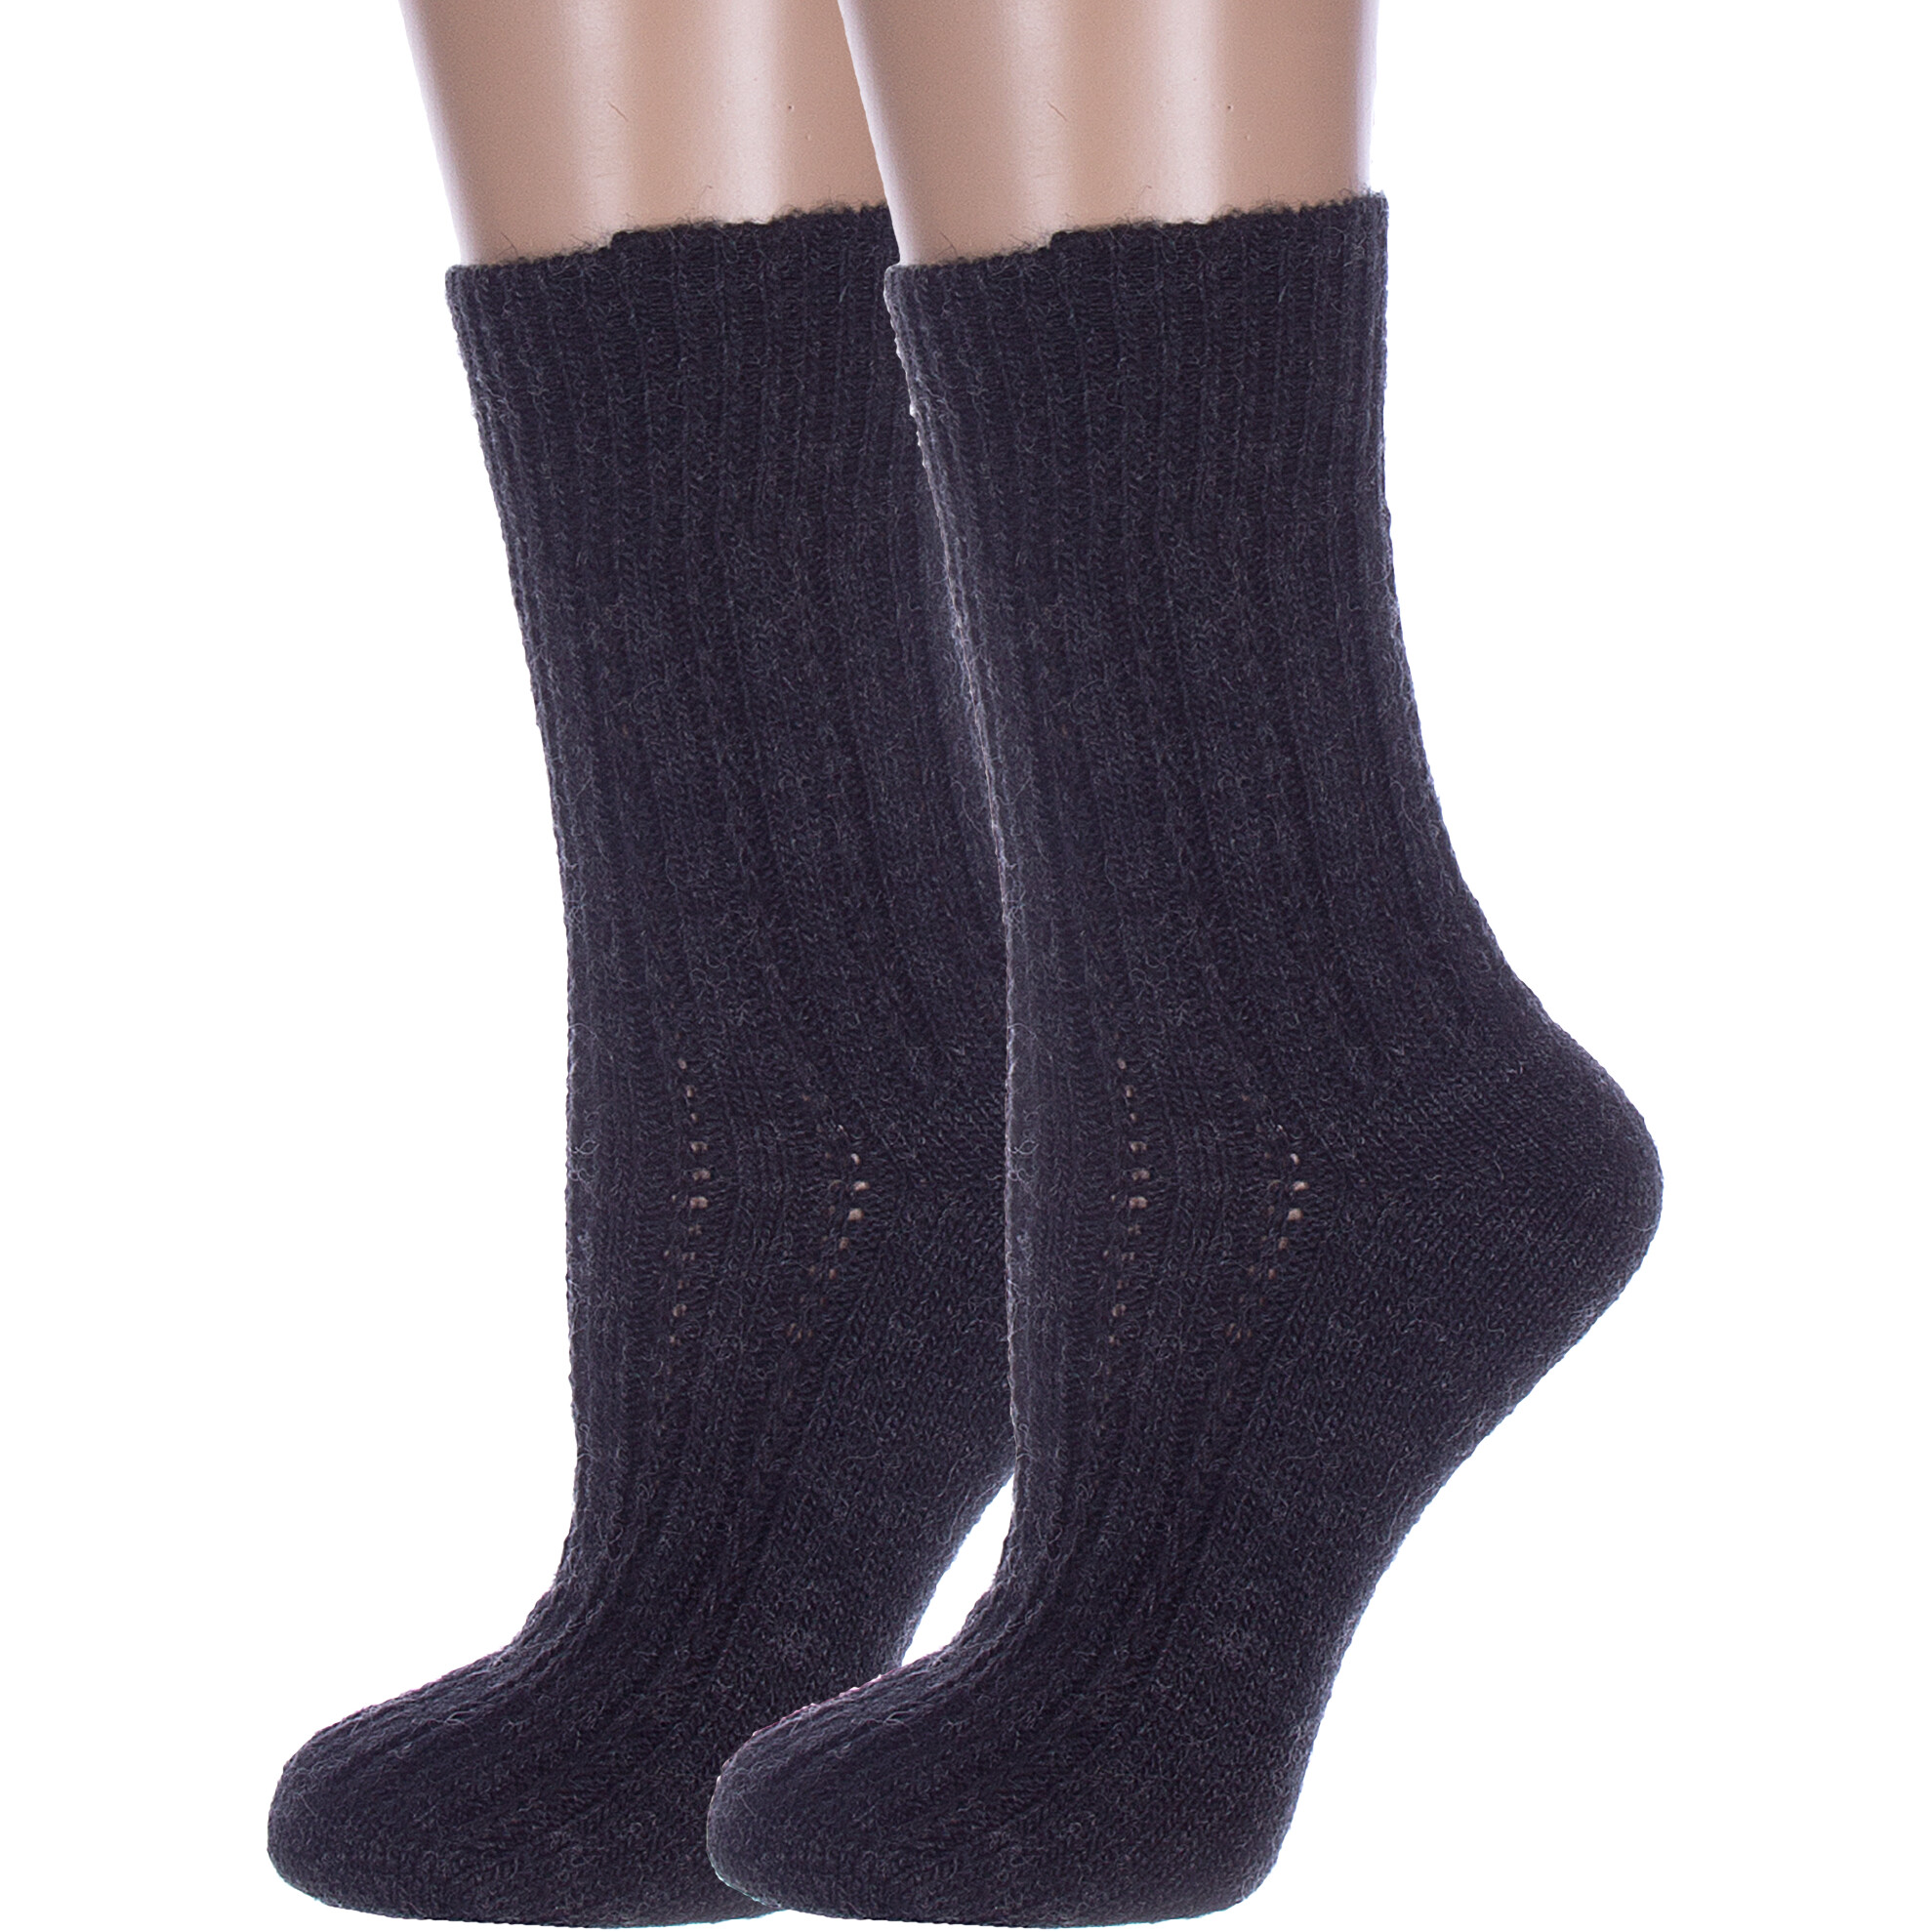 Комплект носков женских Rusocks 2-Ж-180 черных 23-25, 2 пары